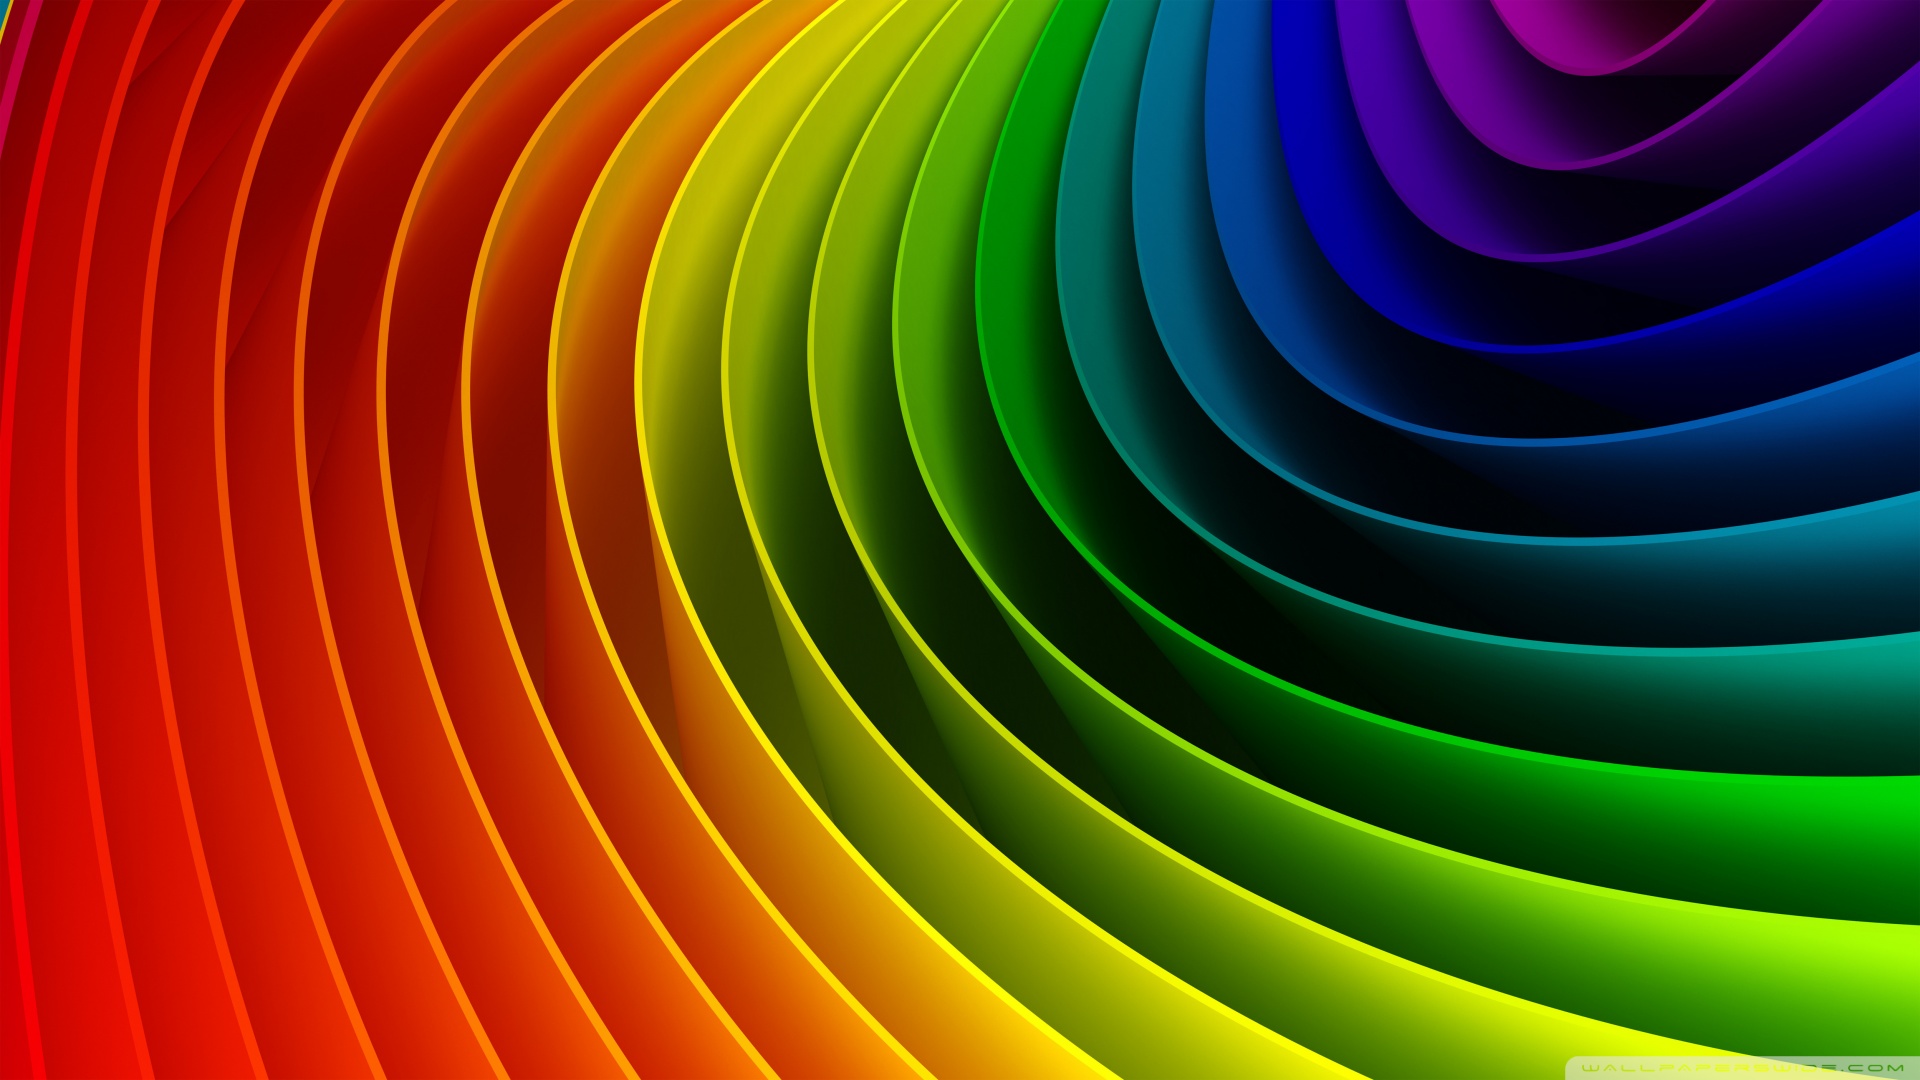 Rainbow Art 3D Ultra HD Wallpaper for 4K UHD Widescreen desktop, tablet & smartphone